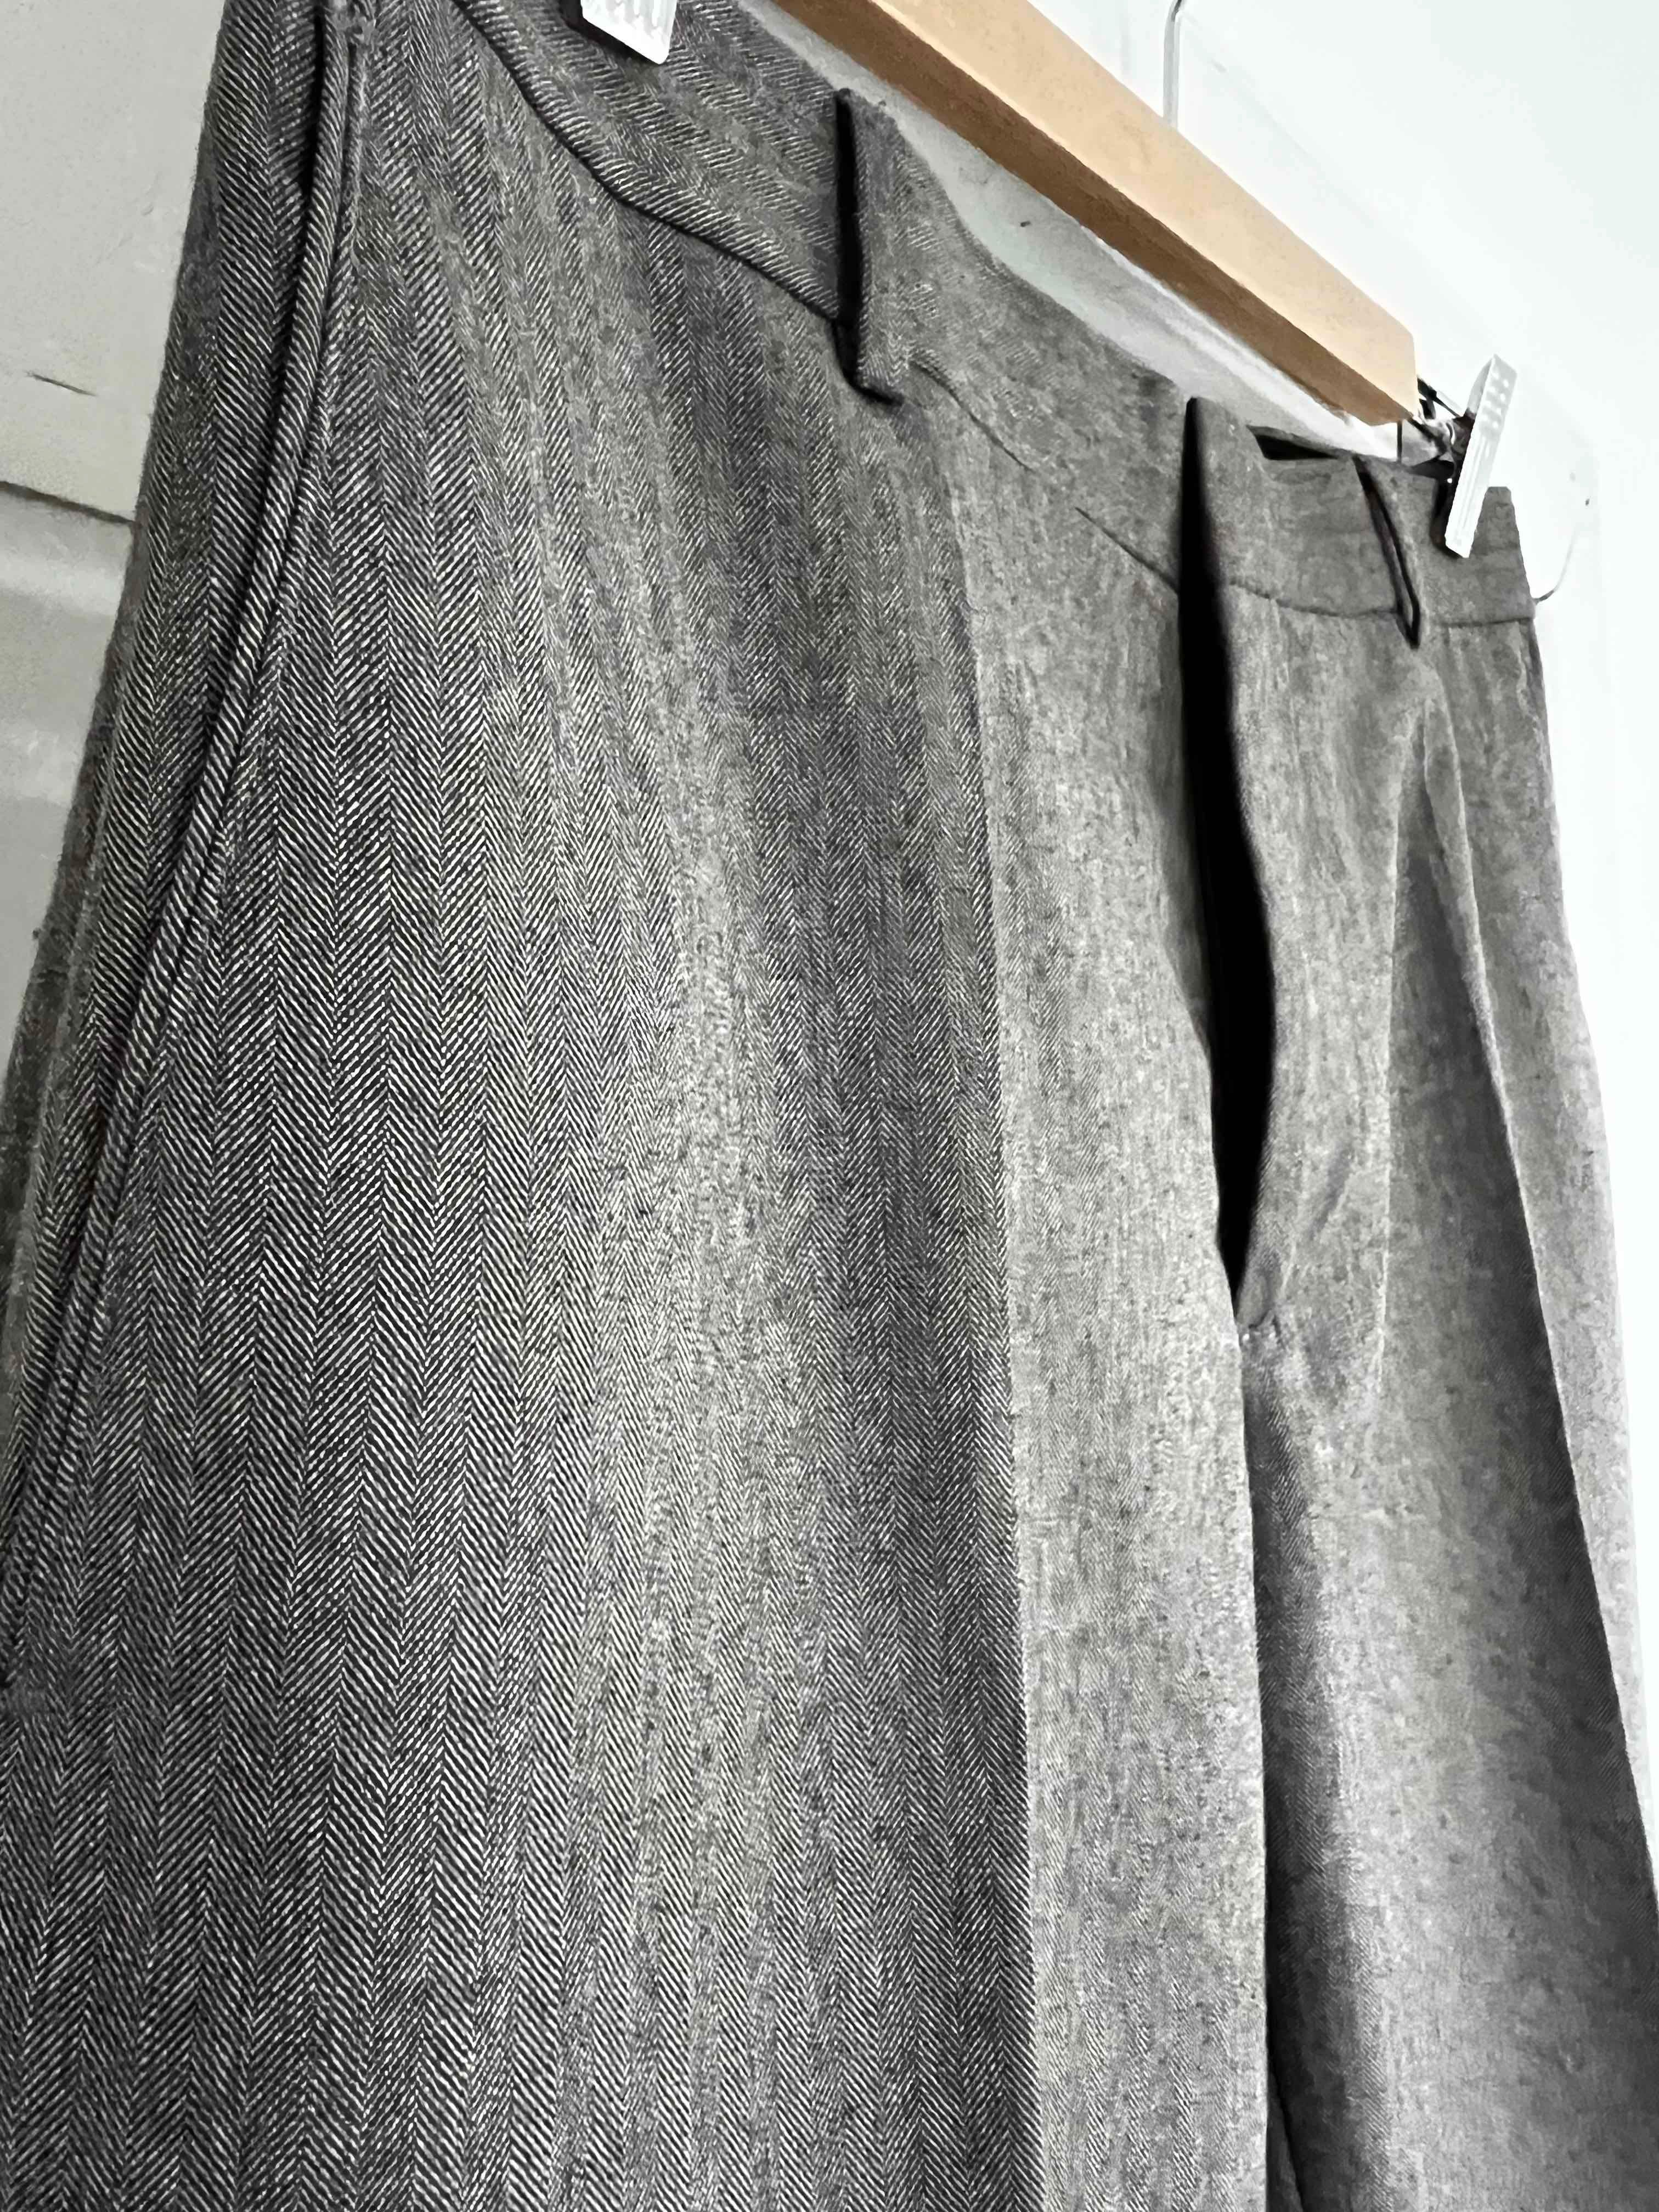 Męskie spodnie marki BANANA REPUBLIC, brązowe w jodełkę